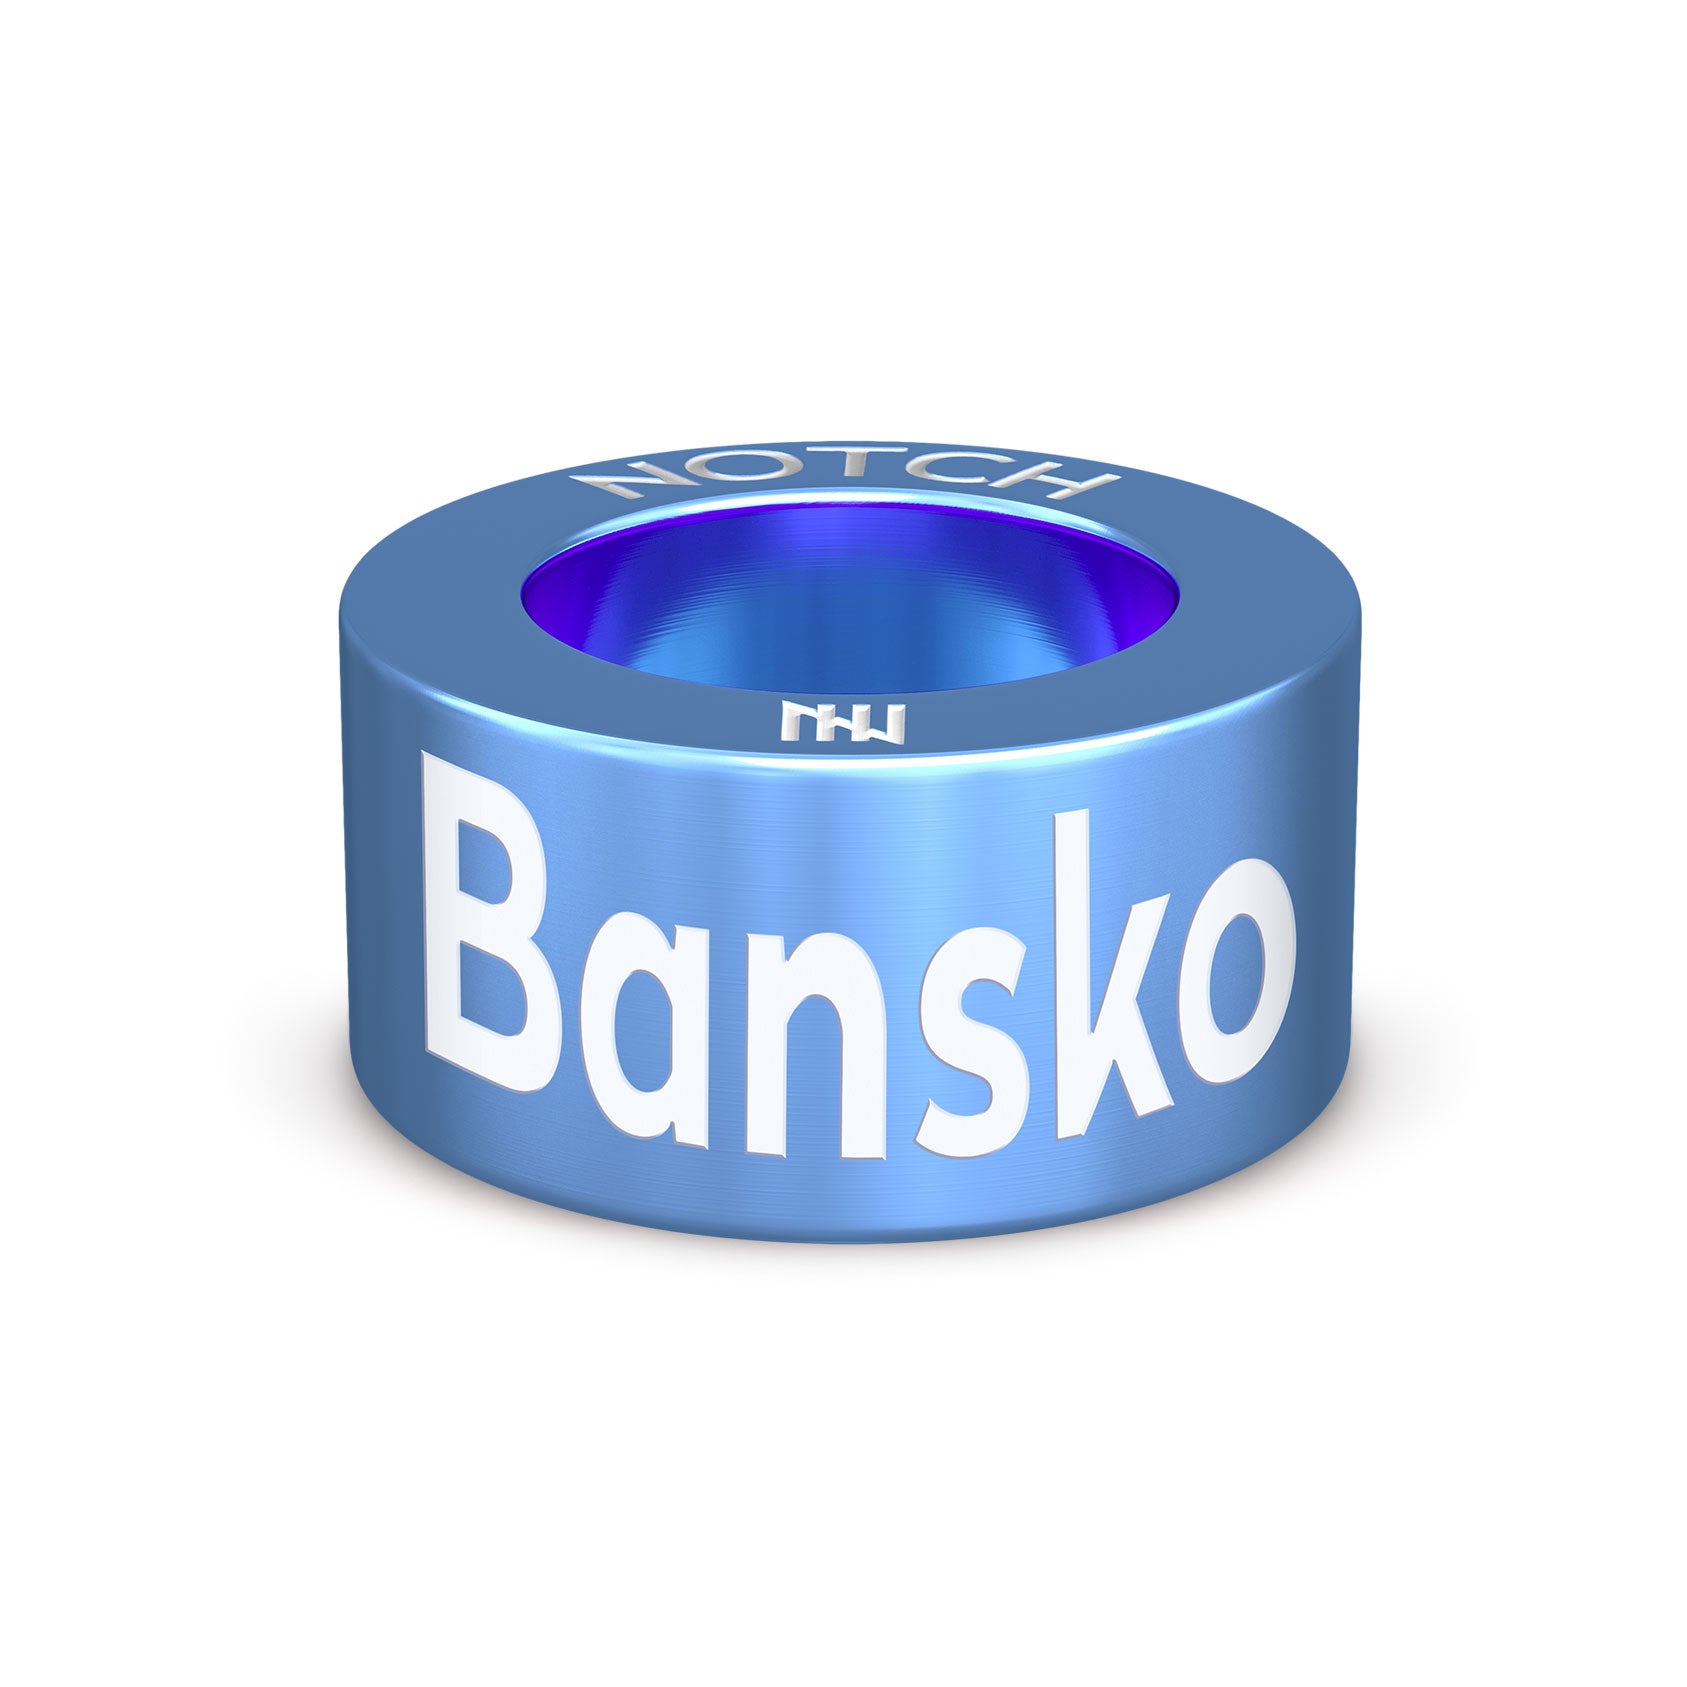 Bansko NOTCH Charm